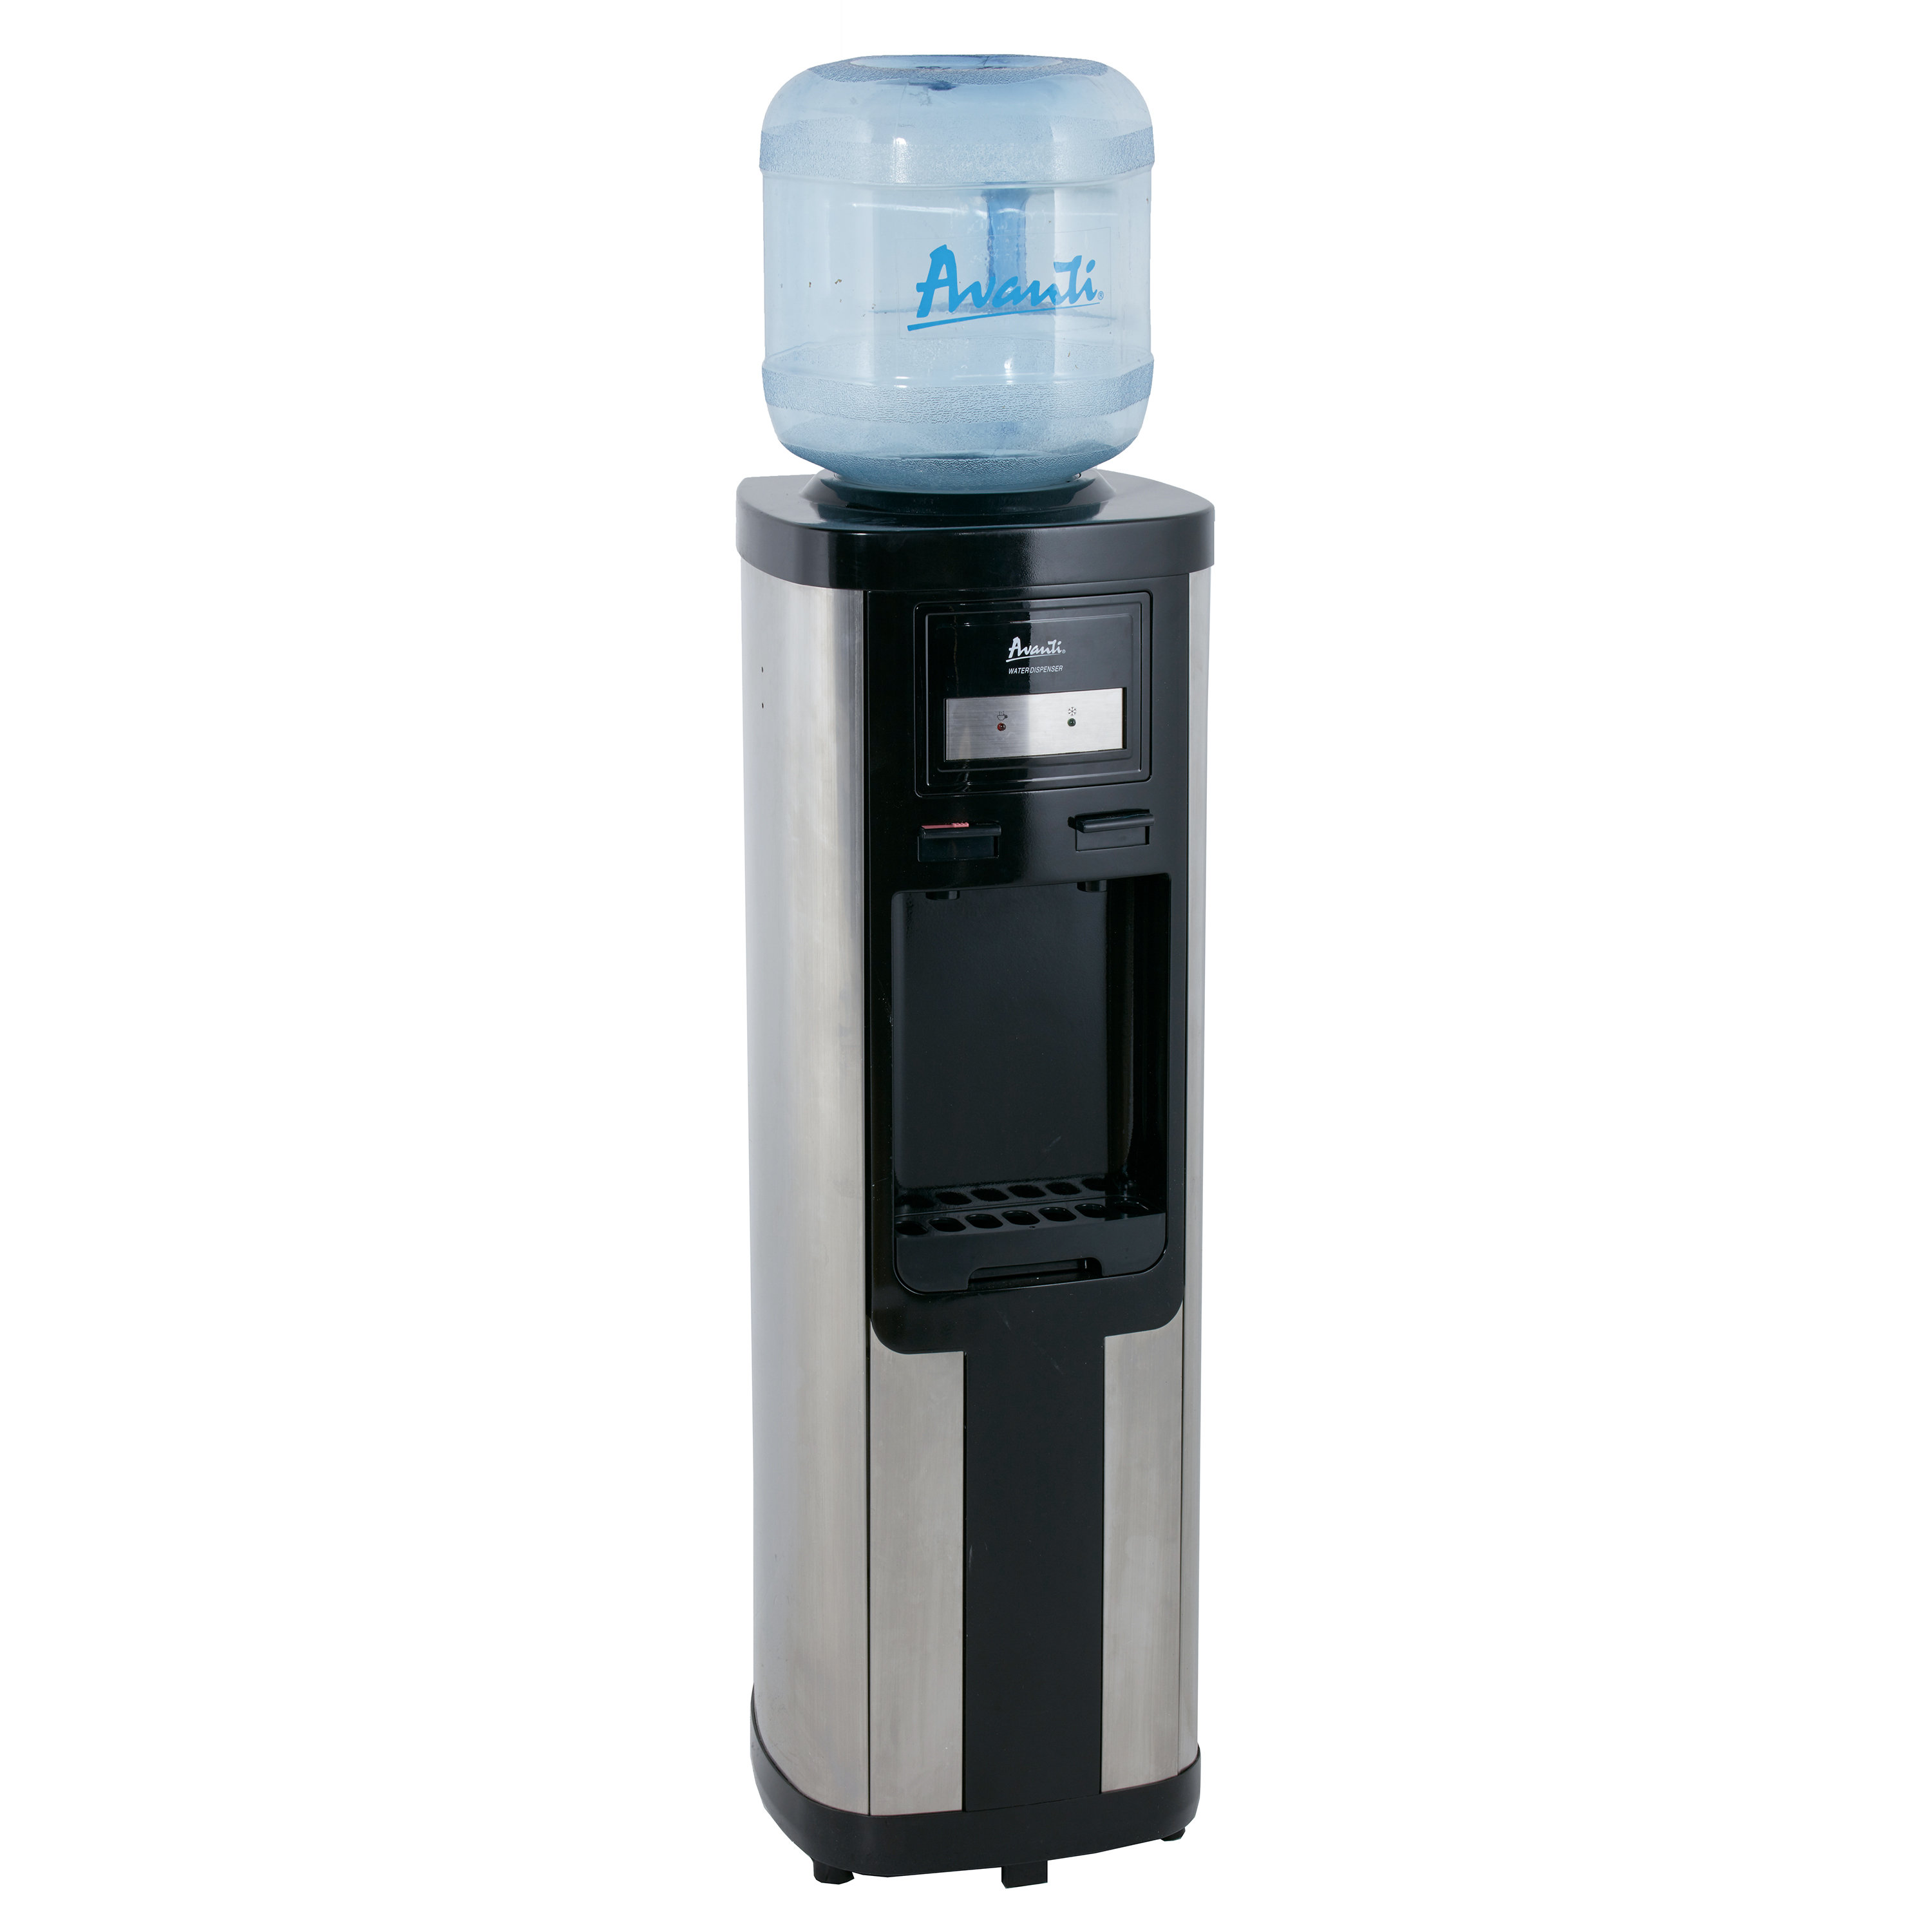 https://assets.wfcdn.com/im/62001395/compr-r85/2253/225367013/avanti-hot-and-cold-water-dispenser.jpg